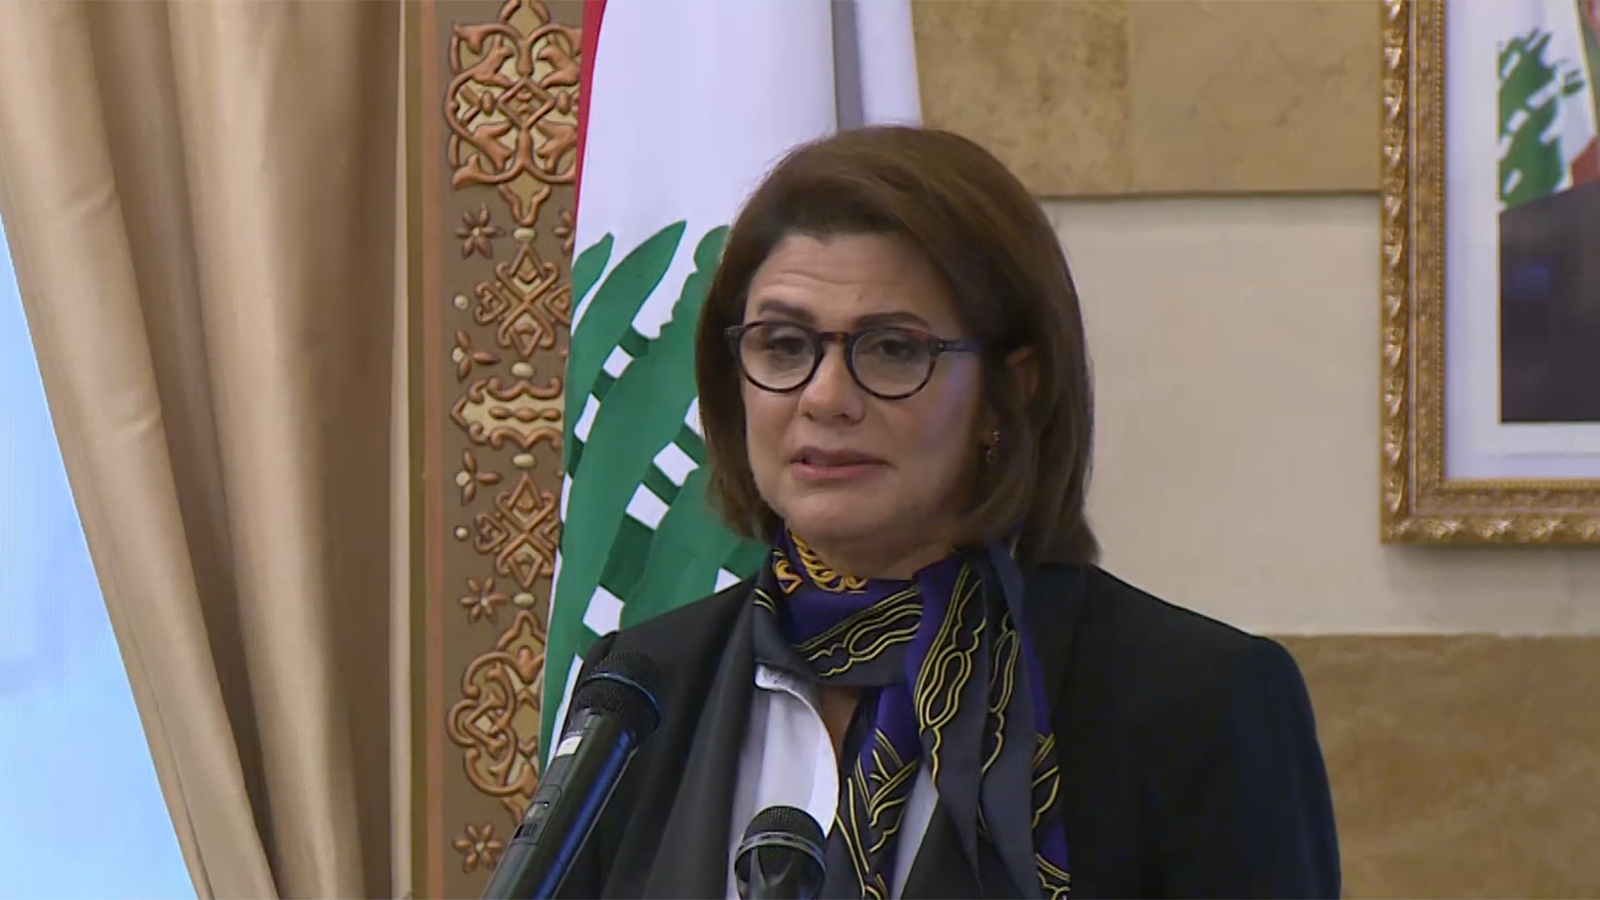 ‪ريا الحسن: وزارة الداخلية تحدِّ لي كأول وزيرة داخلية لأثبت قدرة المرأة‬ (الجزيرة)